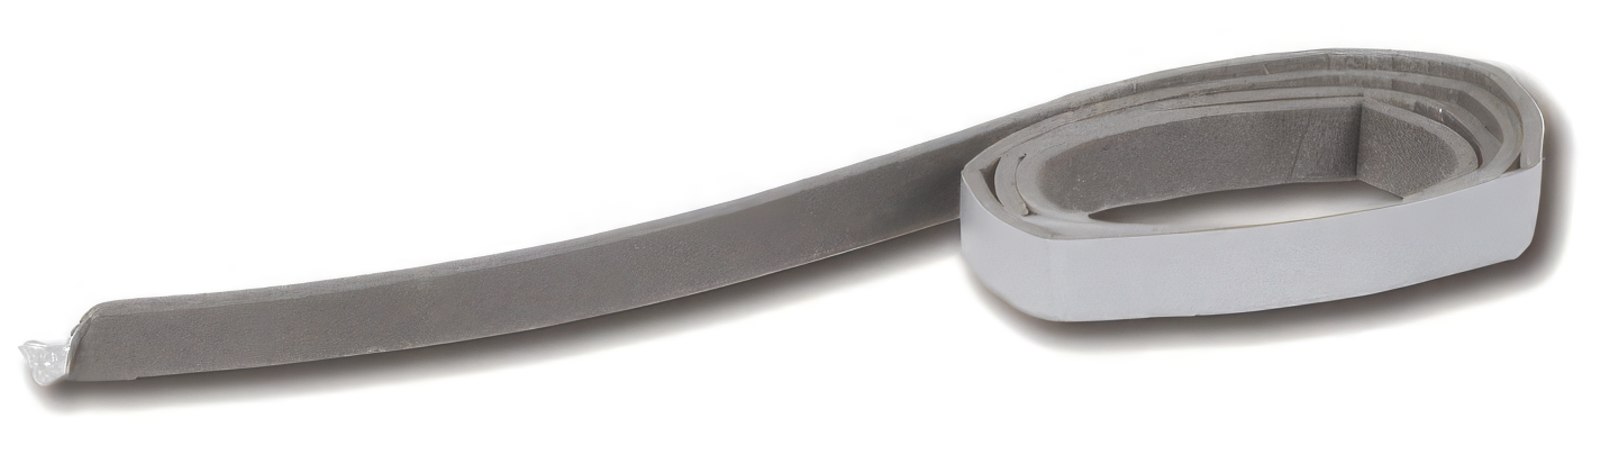 CHP Dichtband 2 x 9 mm grau Schaumstoffband selbstklebend zur Lautsprecherabdichtung (Meterware)